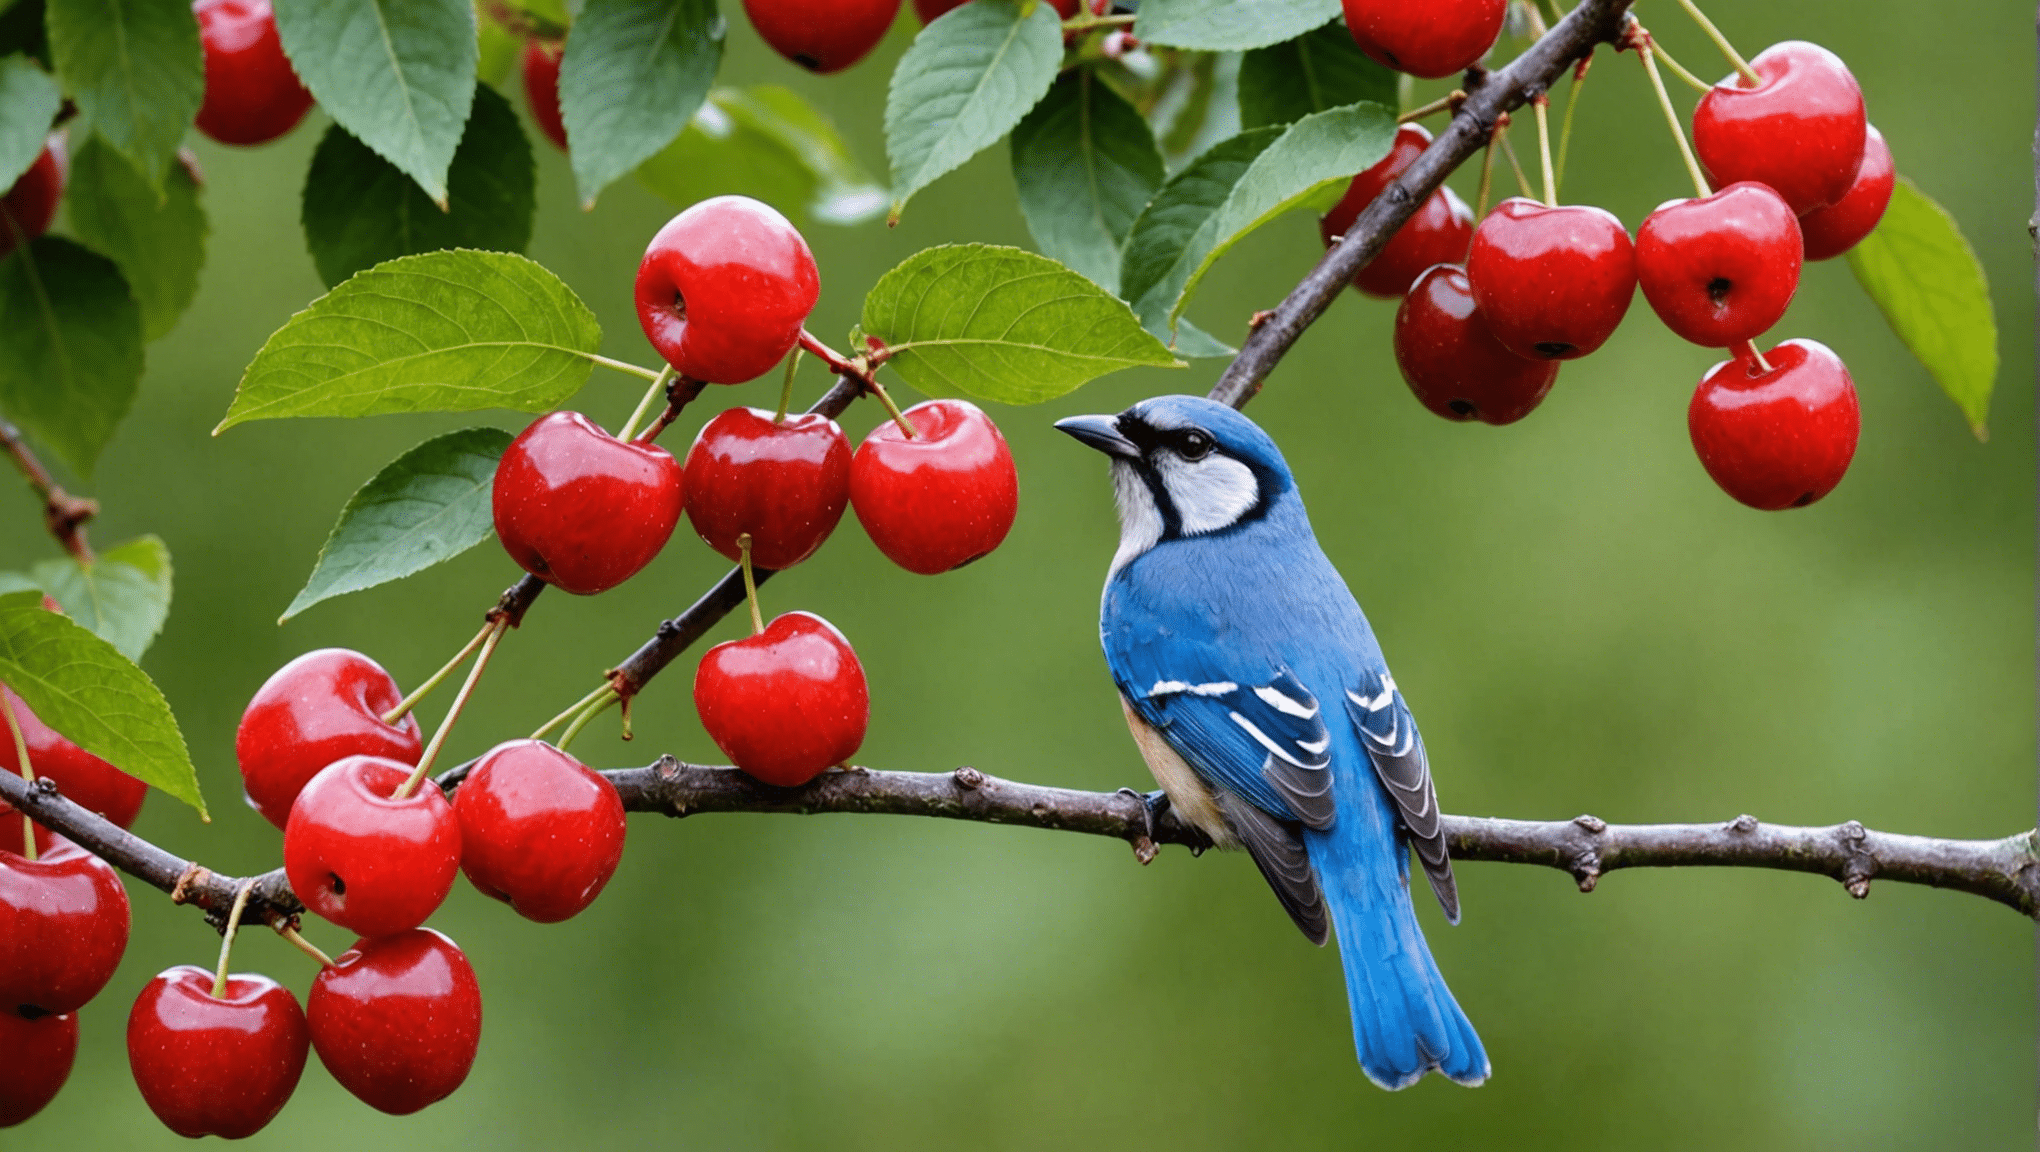 scopri come proteggere le tue ciliegie dagli uccelli con i nostri consigli per evitare che se le mangino.